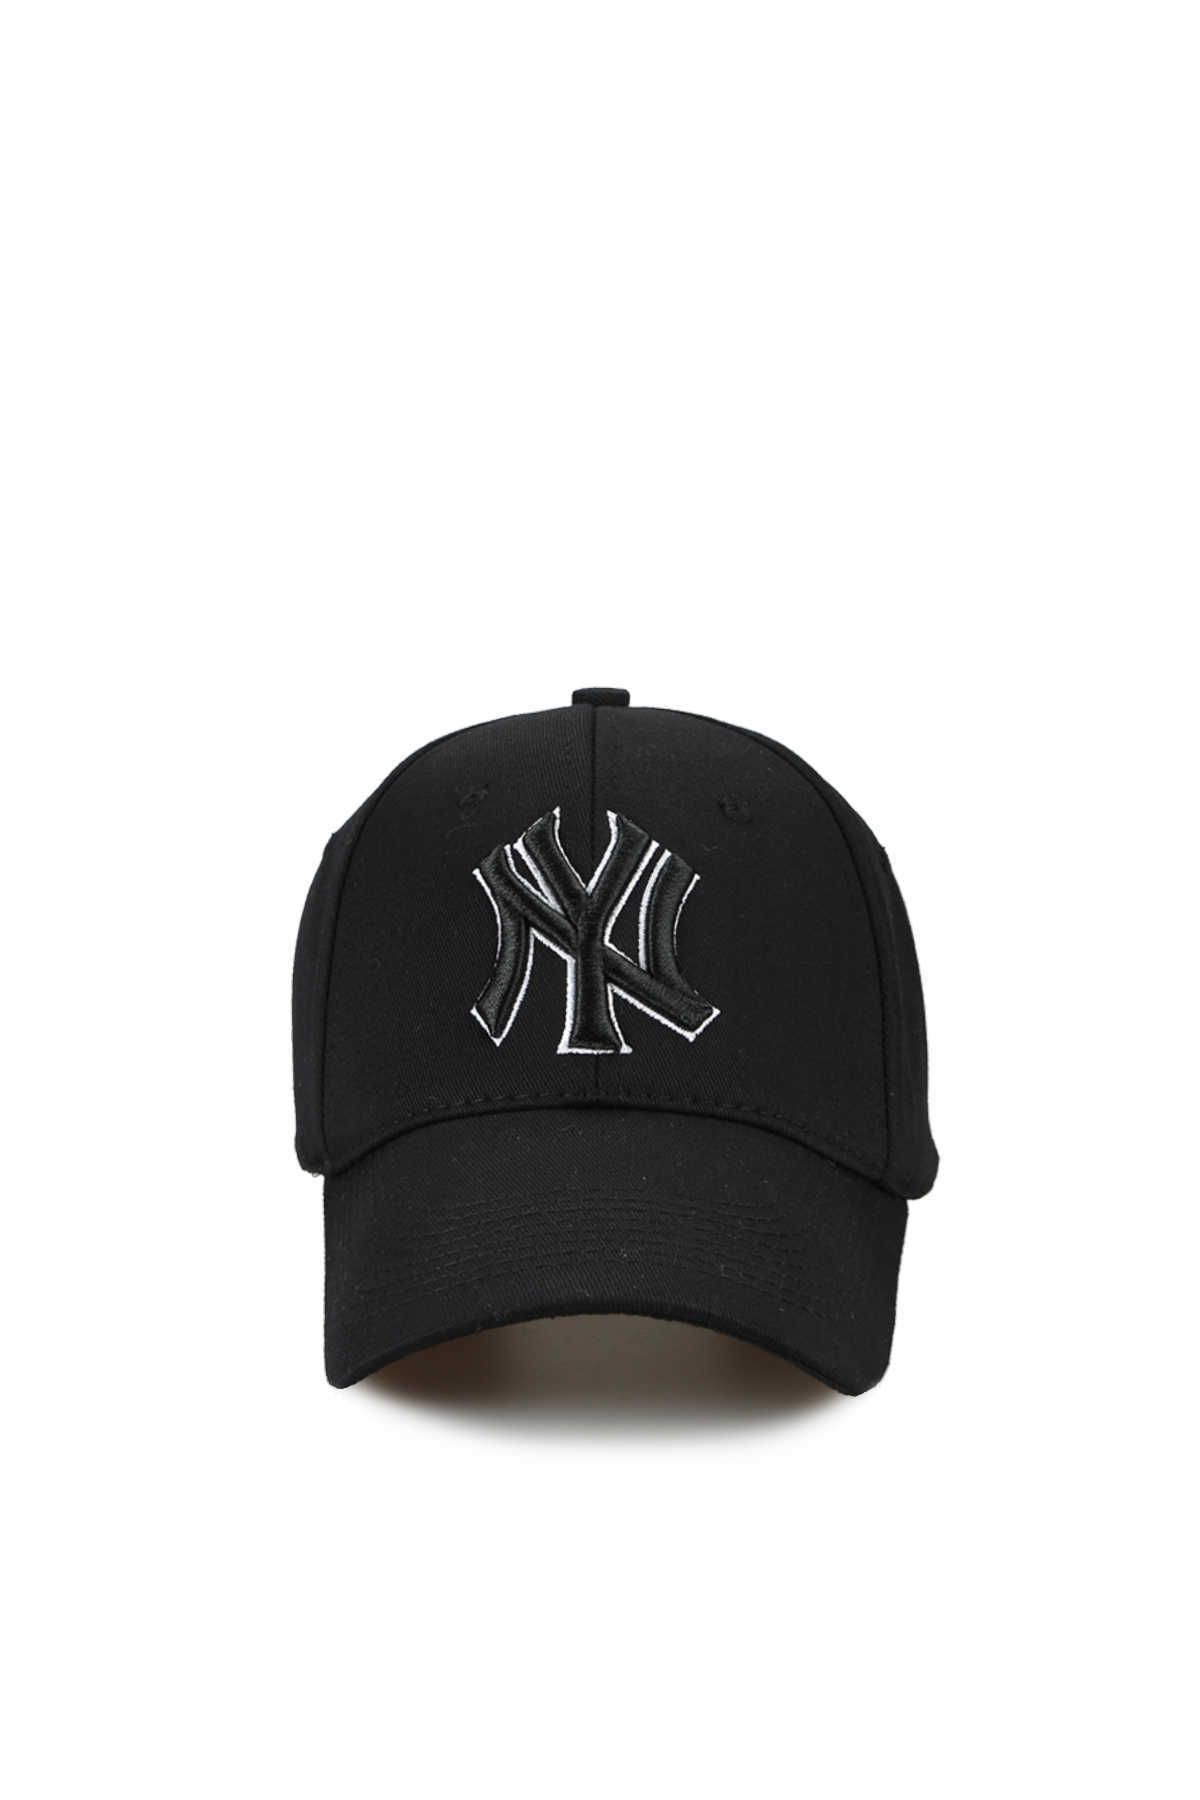 CosmoOutlet Ny New York Nakışlı Kontürlü Pamuklu Unisex Siyah Şapka